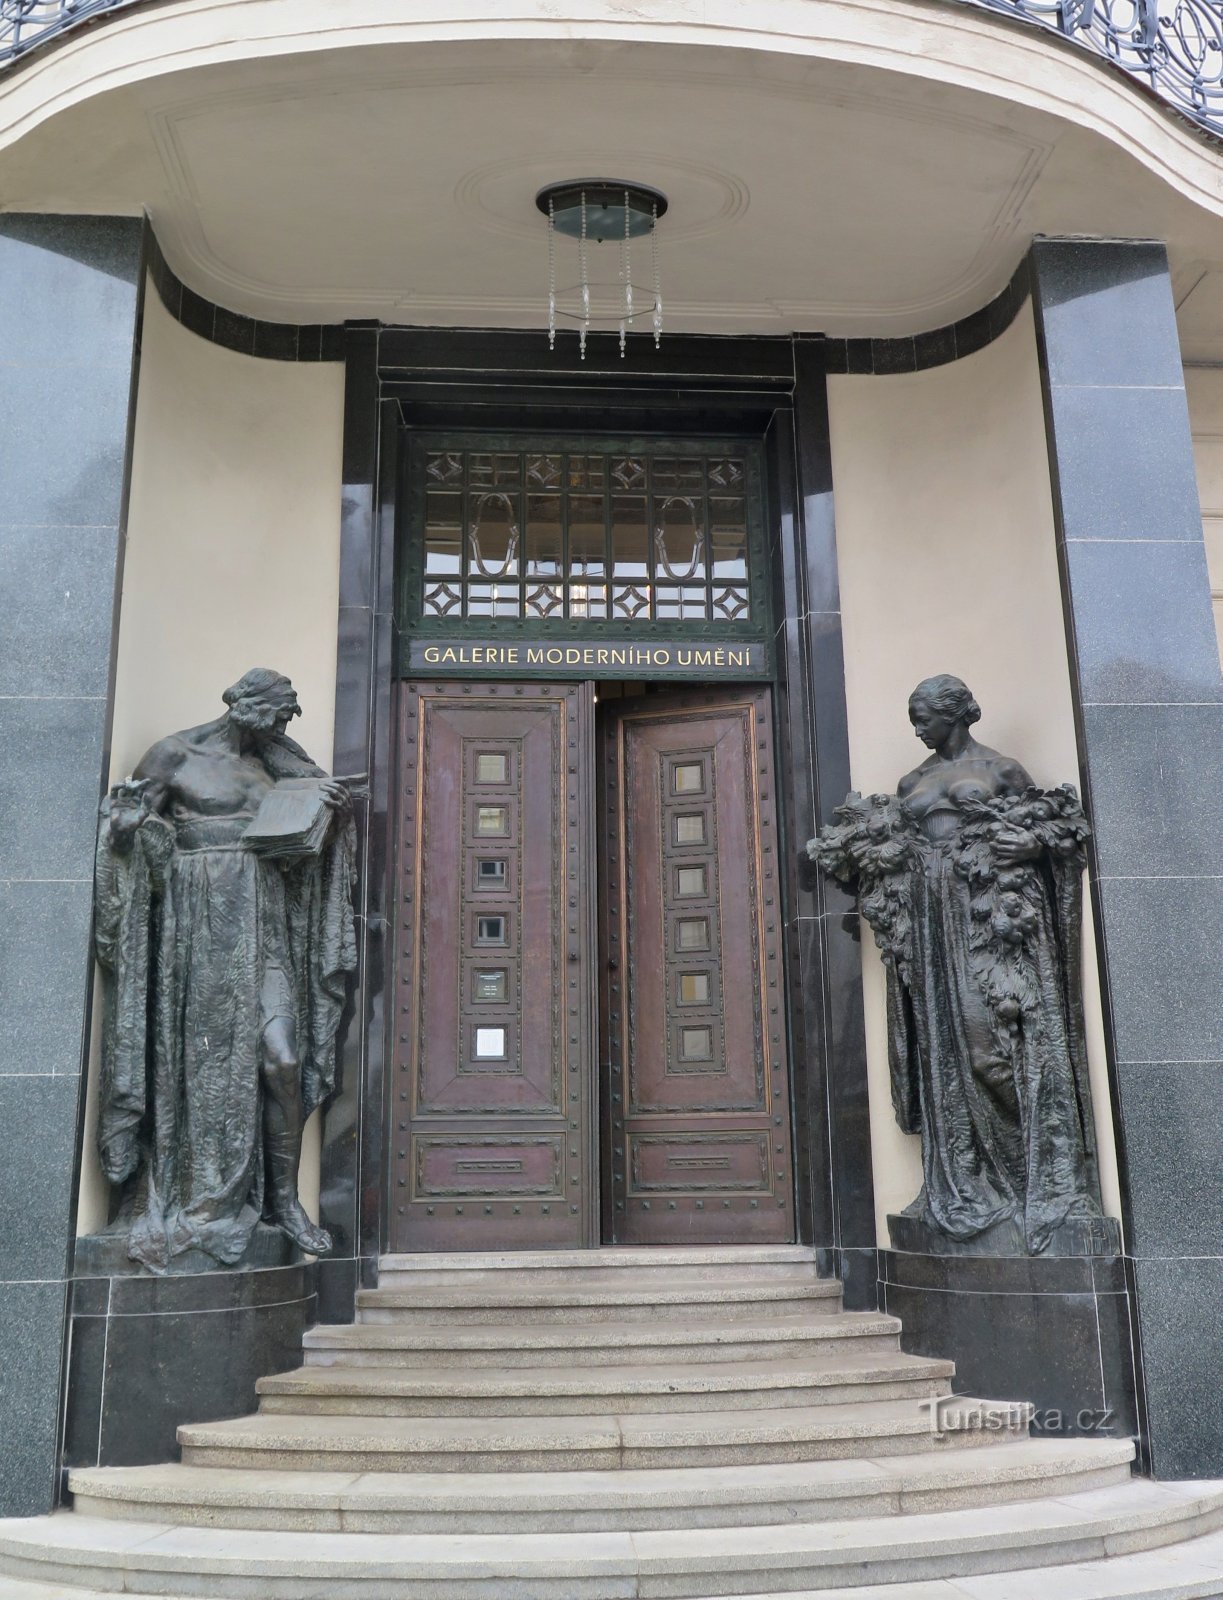 entrance sculptures of Ladislav Šaloun